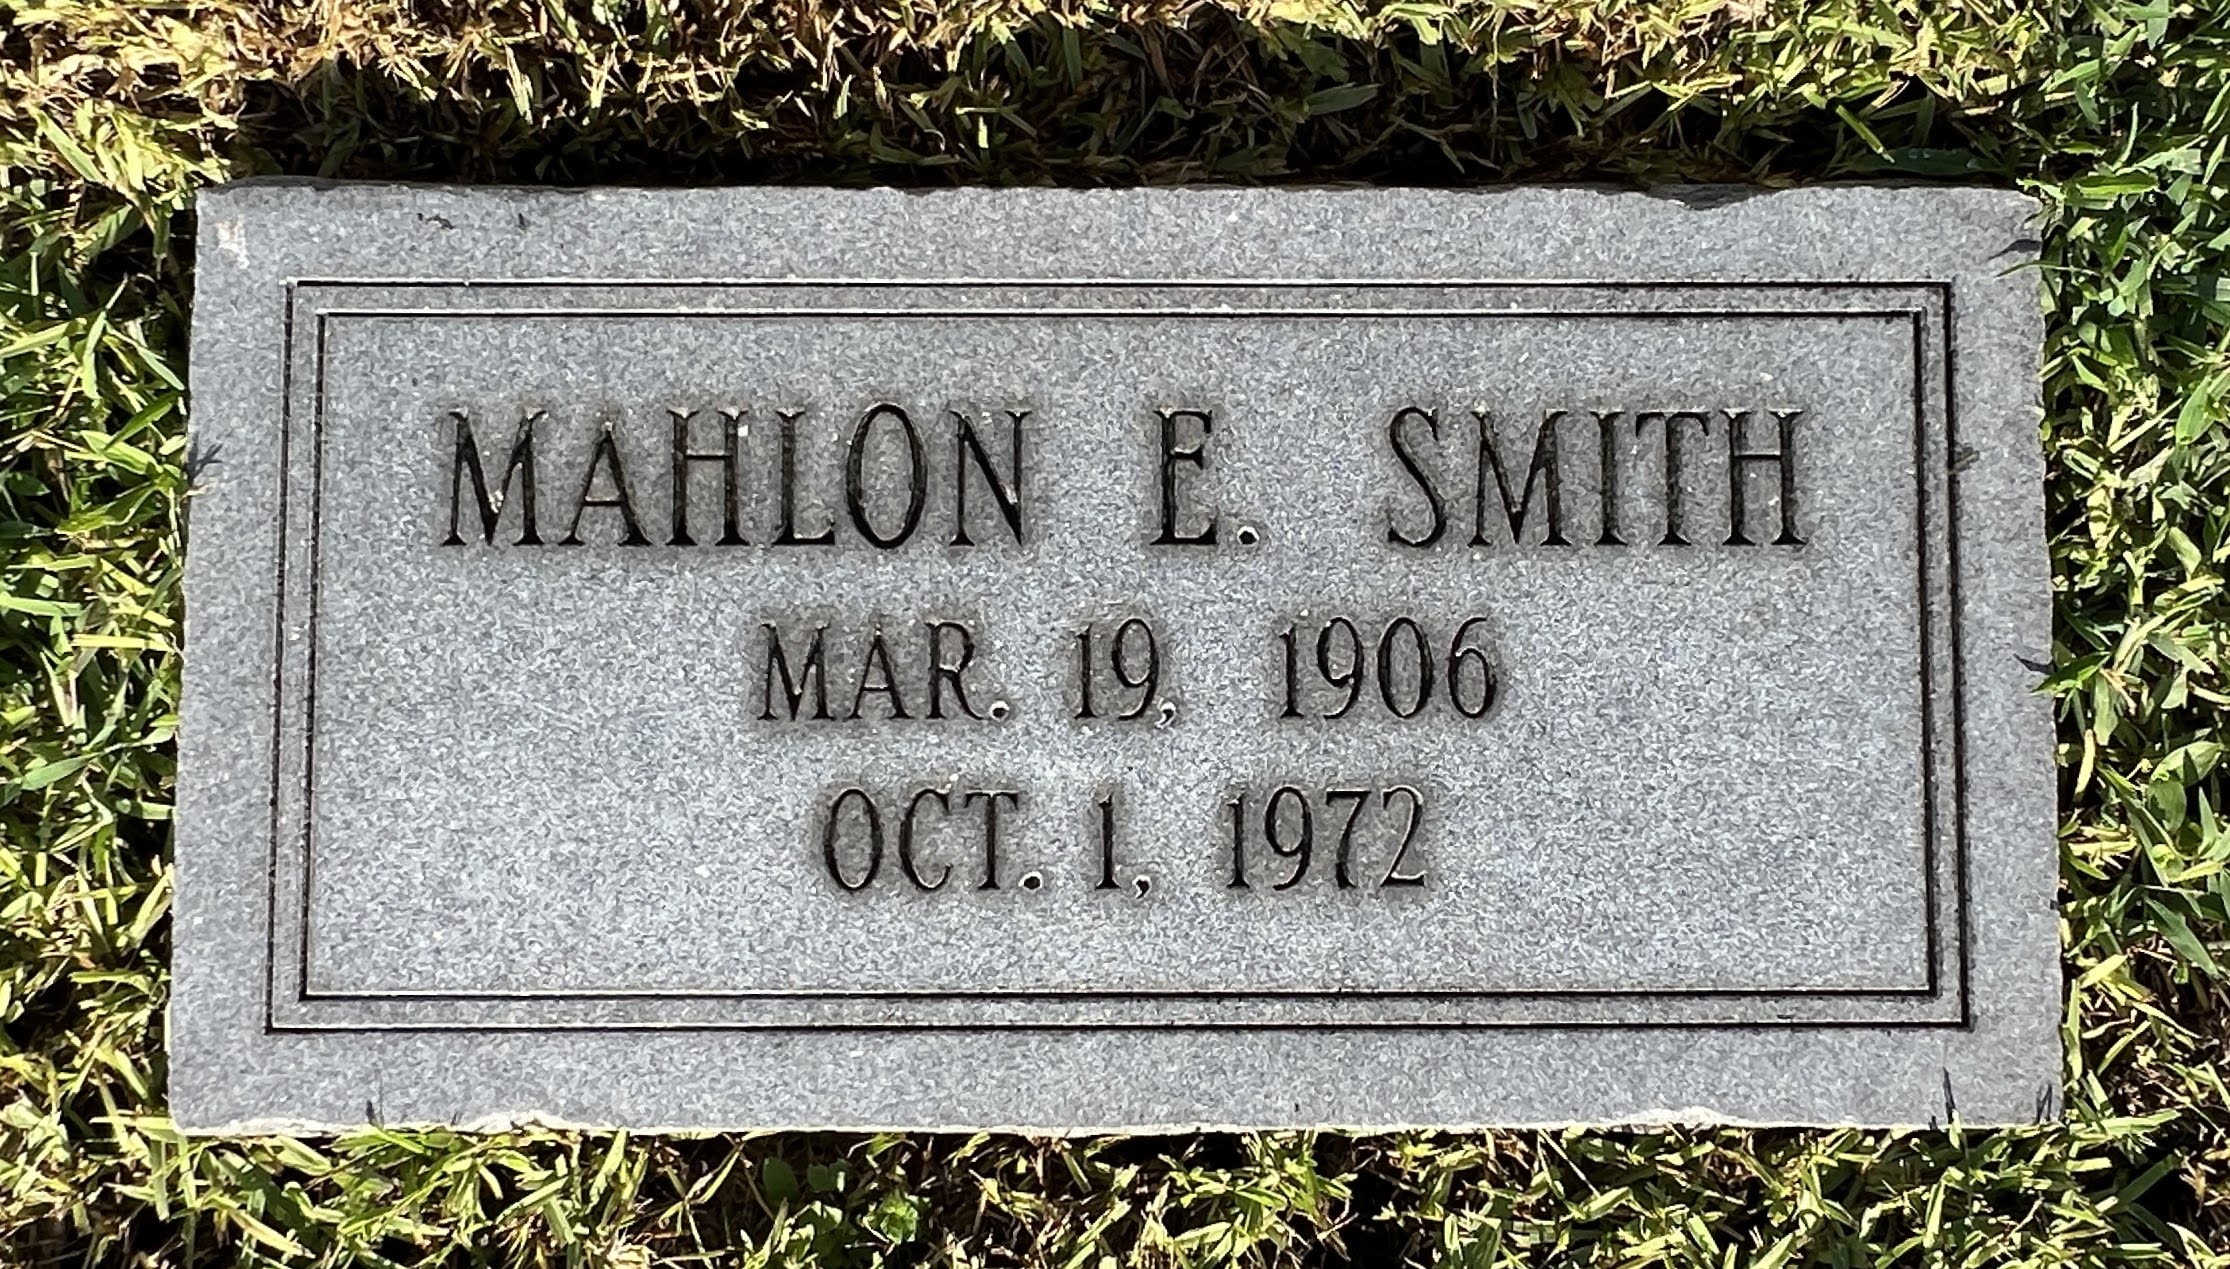 Mahlon E Smith